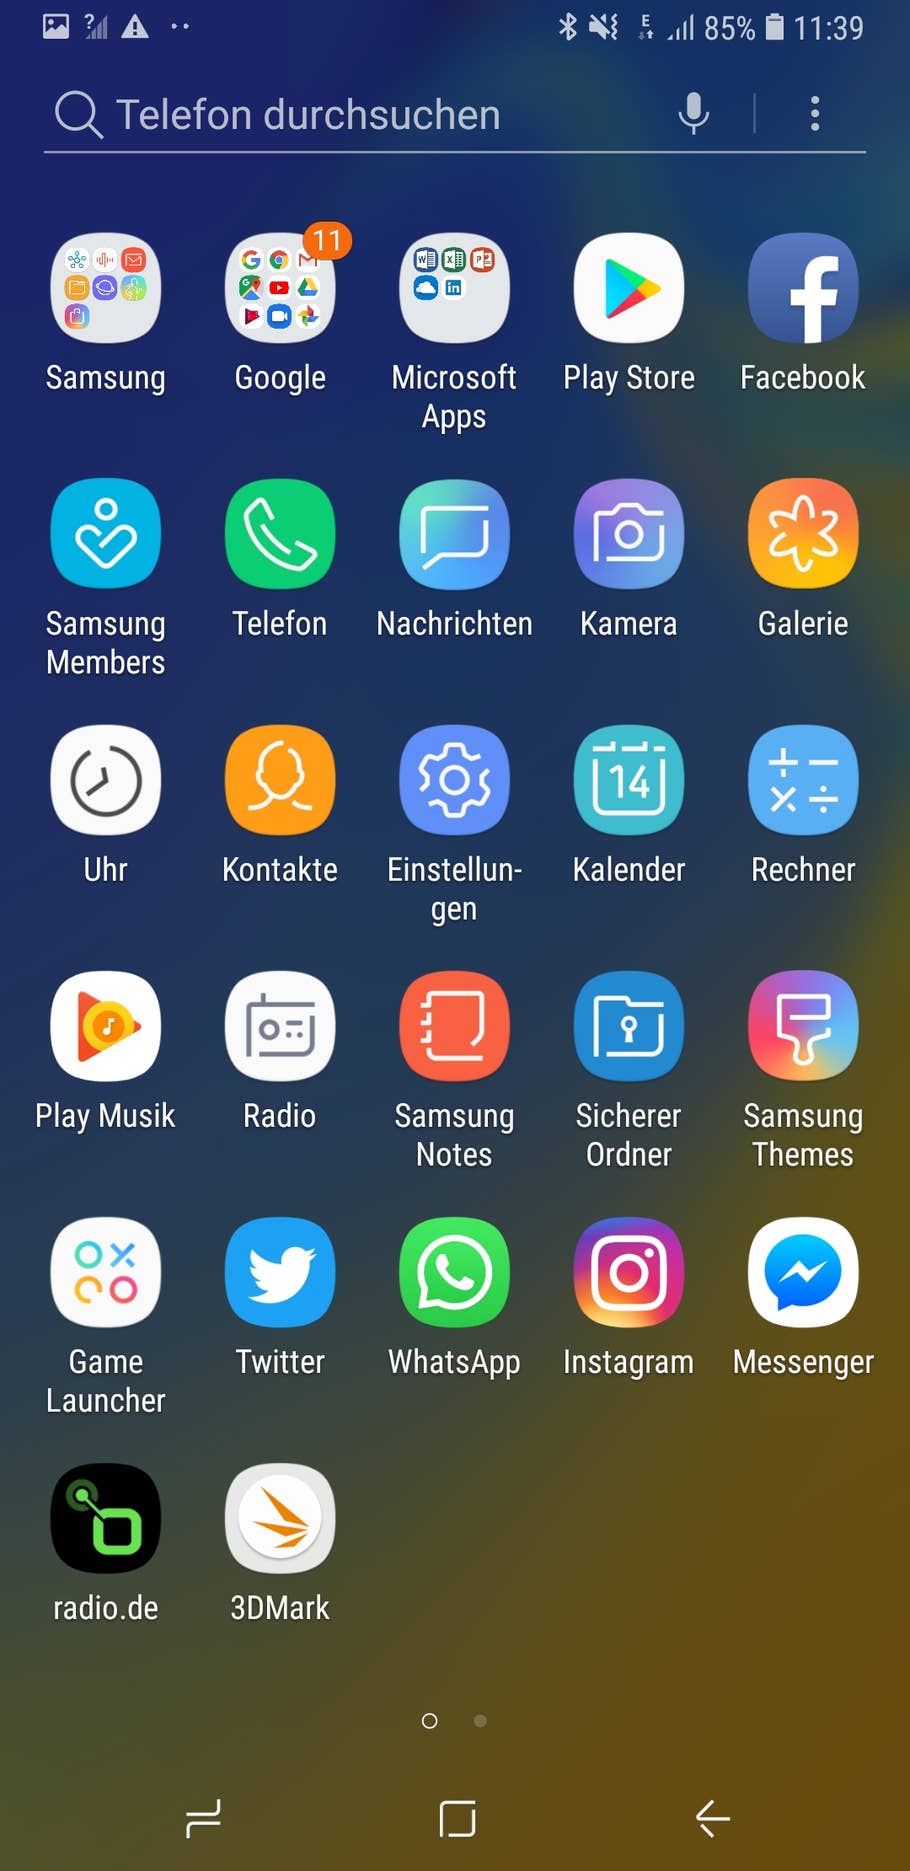 Die Benutzeroberfläche des Samsung Galaxy A7 (2018)